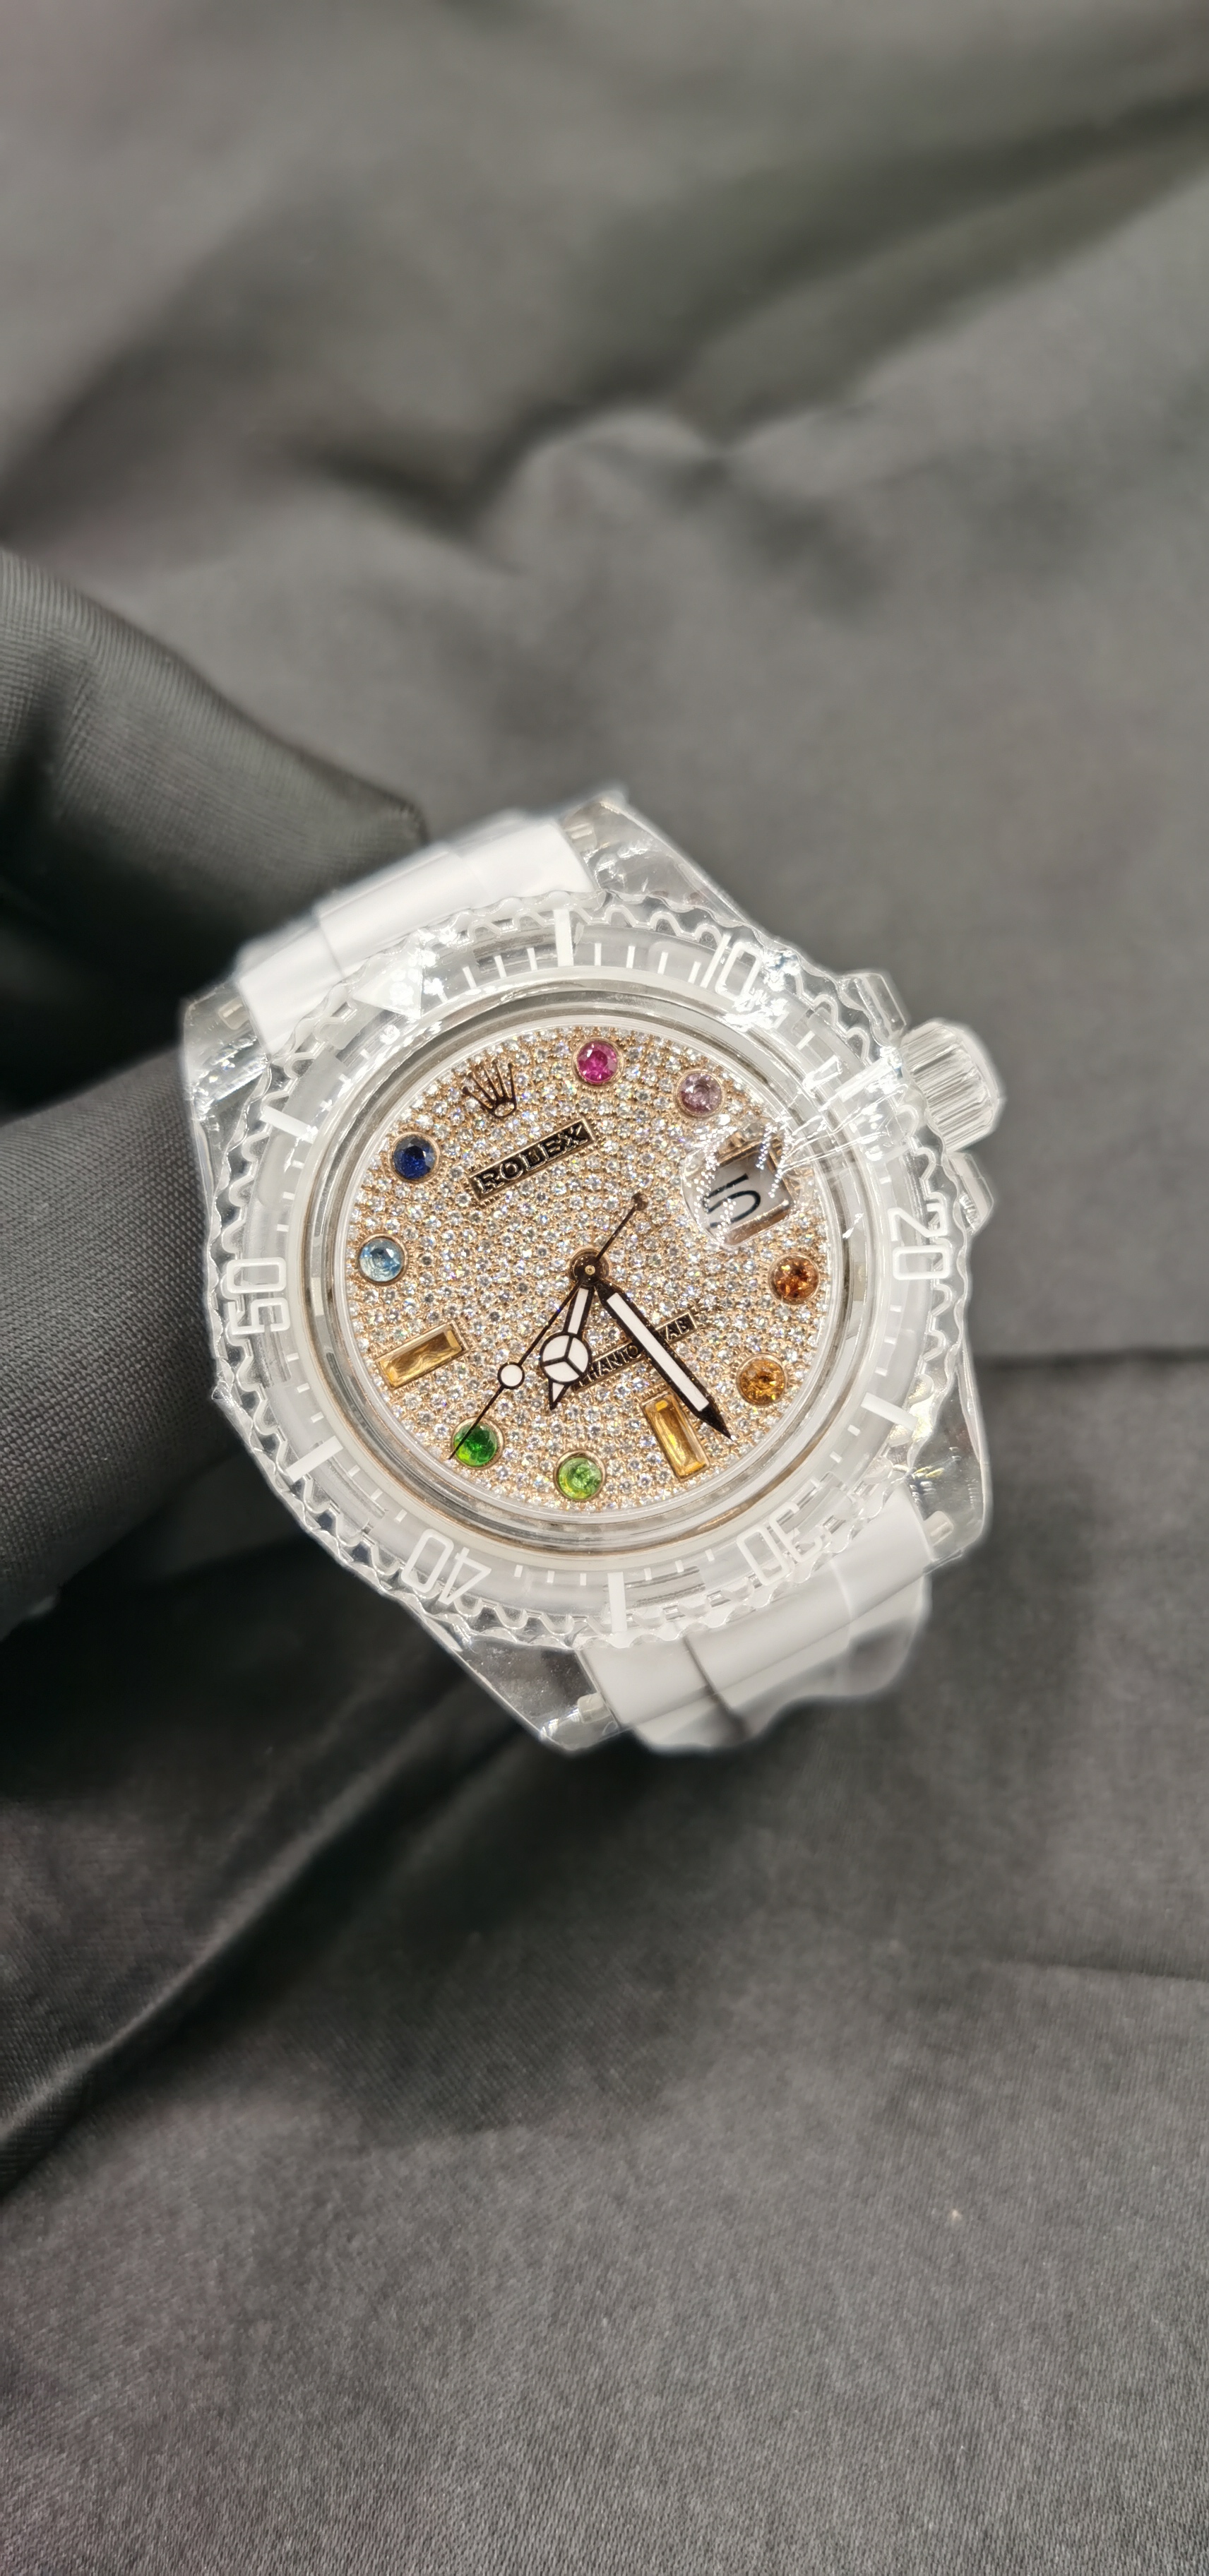 Rolex劳力士 Phantomlab fc系列 蓝宝石水晶腕表PH0005